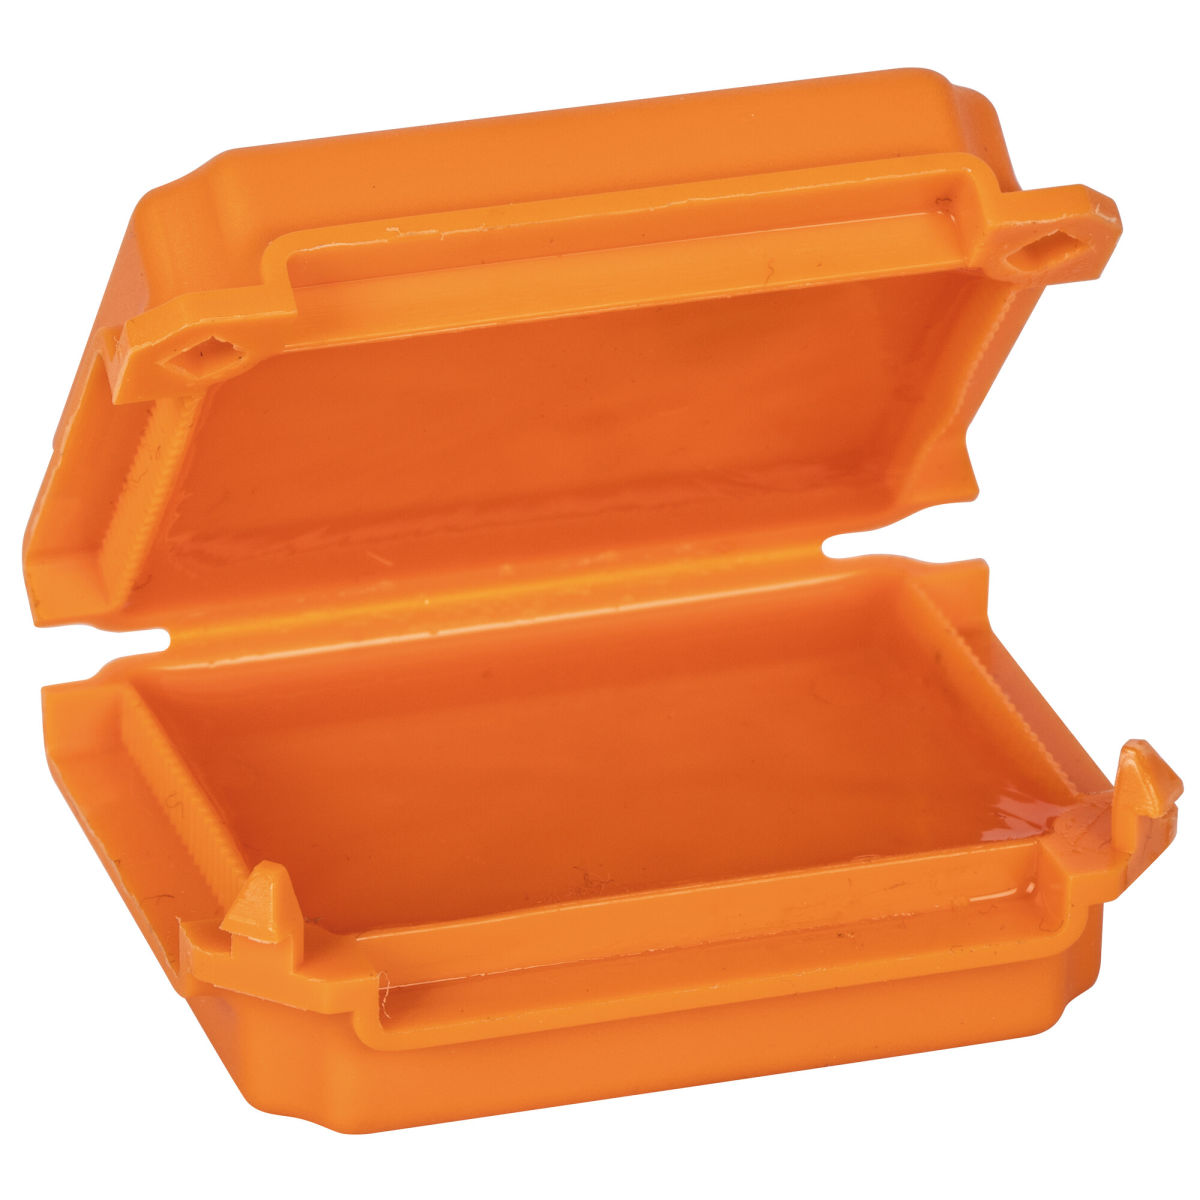 GEL-Minibox halogenfrei und UV-beständig orange